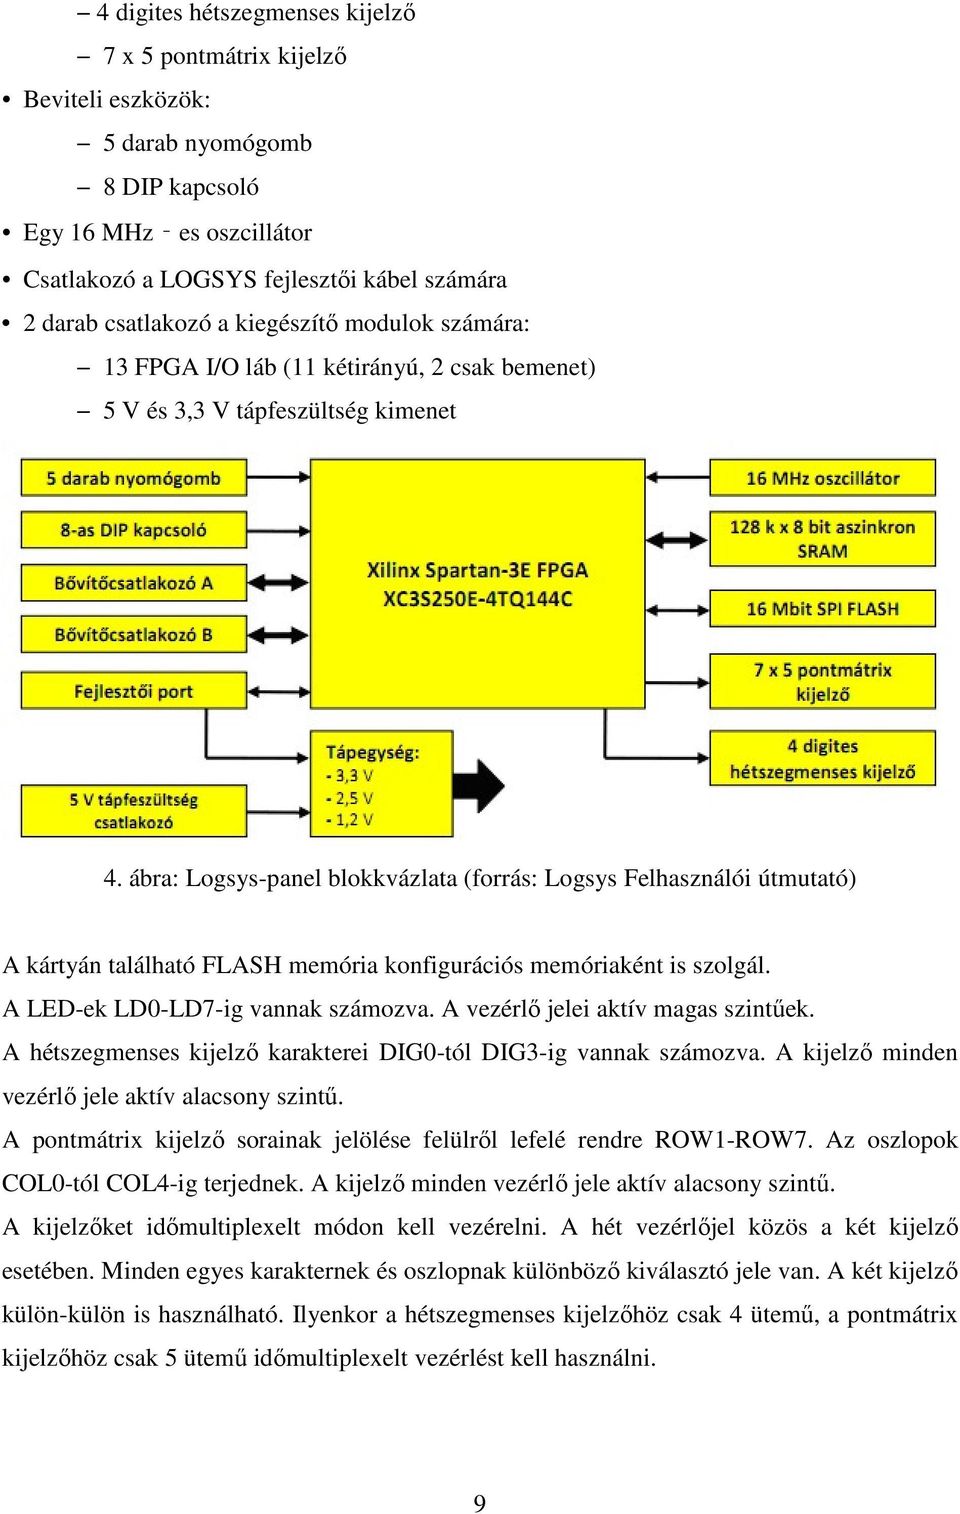 ábra: Logsys-panel blokkvázlata (forrás: Logsys Felhasználói útmutató) A kártyán található FLASH memória konfigurációs memóriaként is szolgál. A LED-ek LD0-LD7-ig vannak számozva.